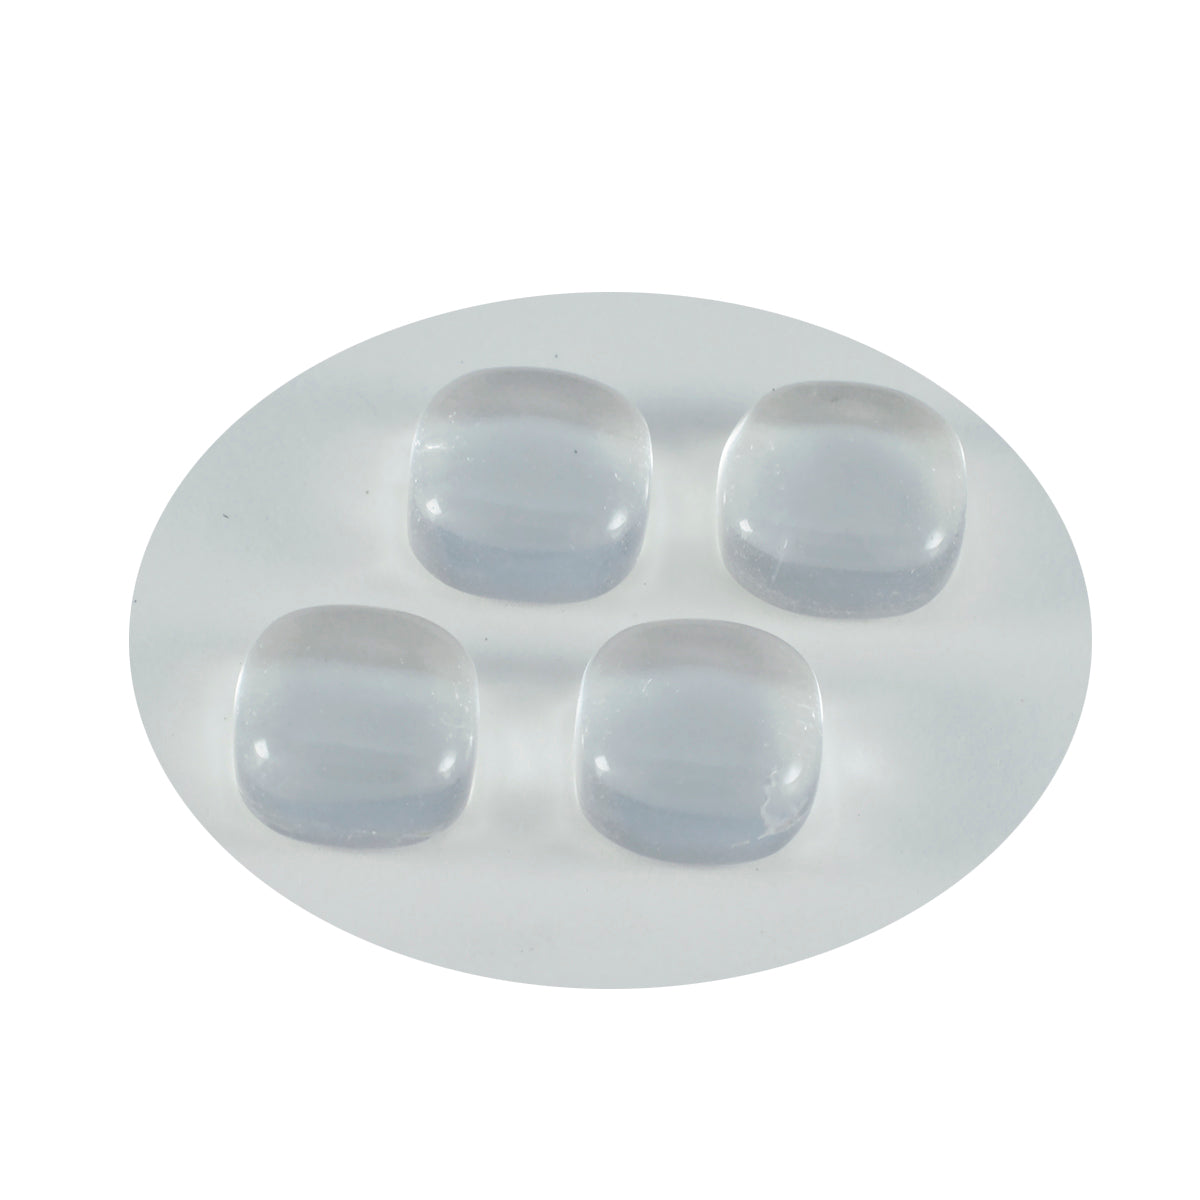 Riyogems, 1 pieza, cabujón de cristal de cuarzo blanco, 8x8mm, forma de cojín, gemas sueltas de buena calidad